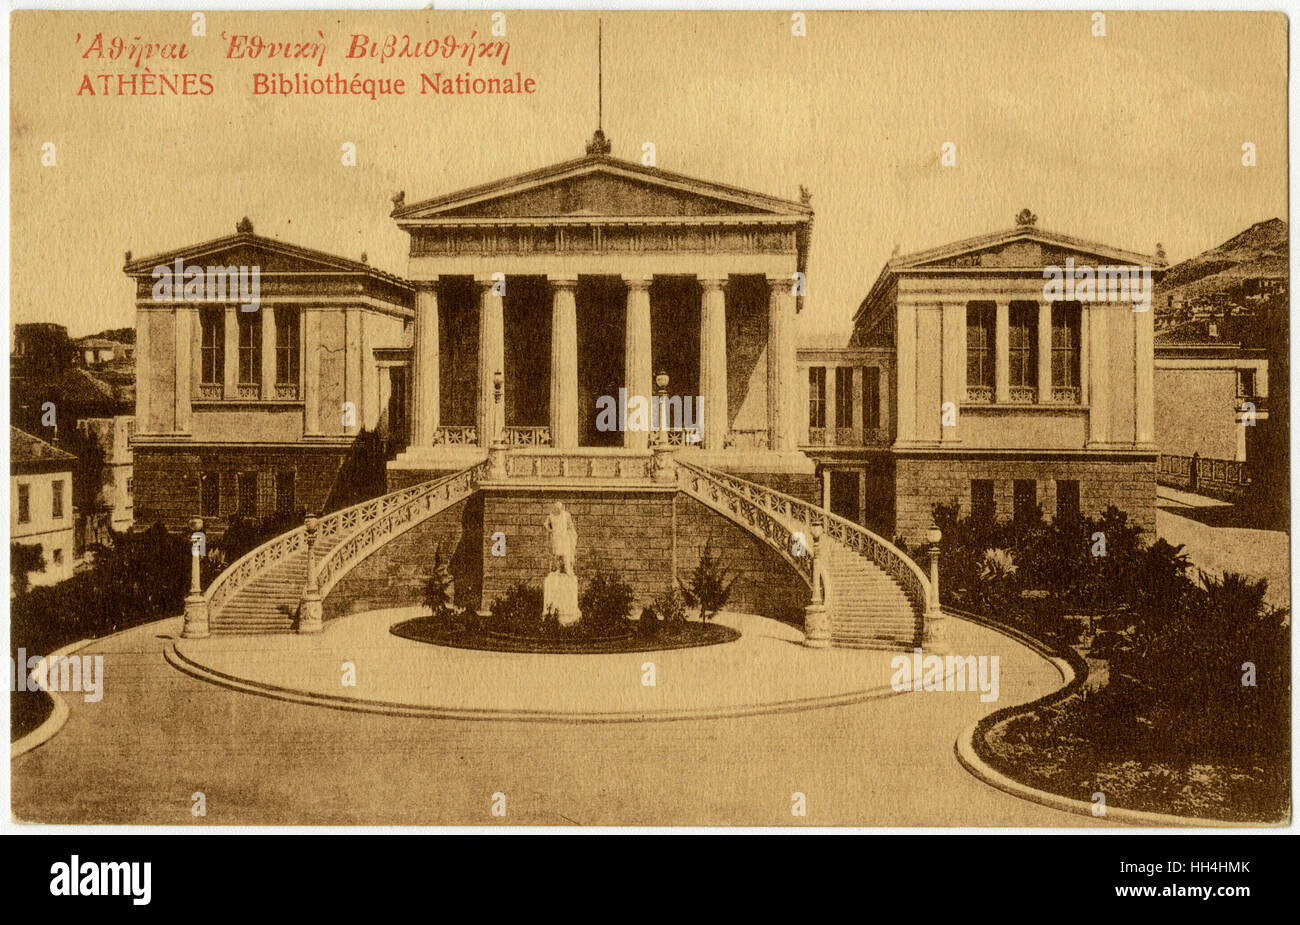 La Bibliothèque nationale, Athènes, Grèce. Banque D'Images